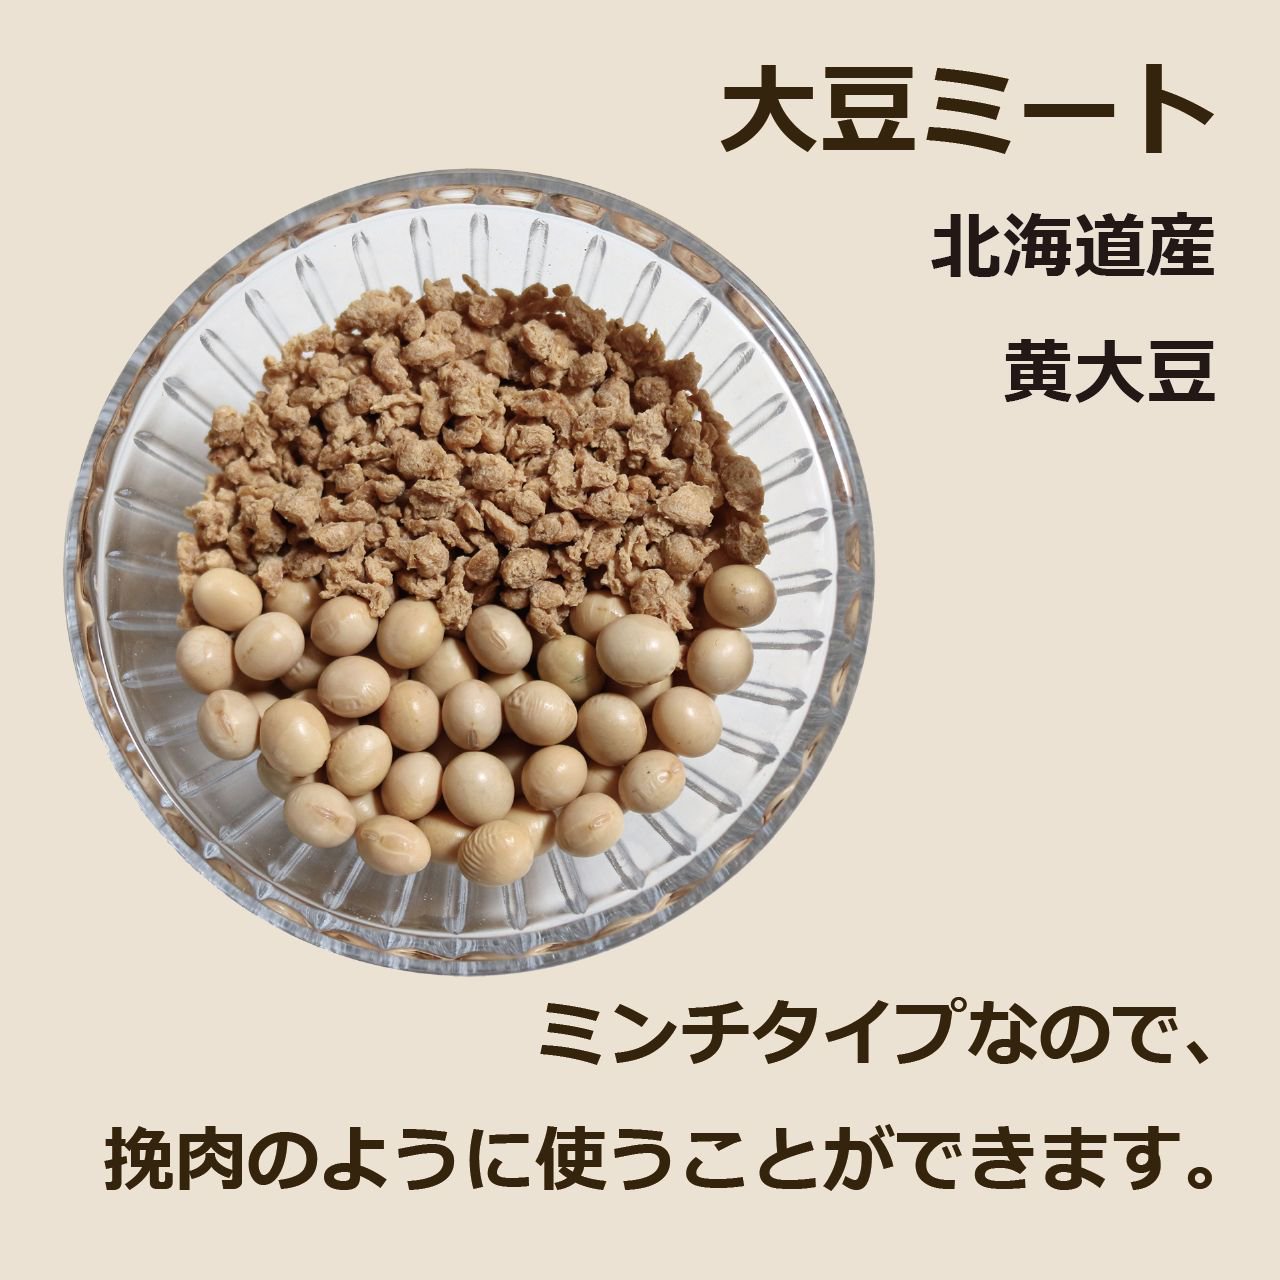 大豆ミート 北海道産 黄大豆 ミンチタイプなので、挽肉のように使うことができます。